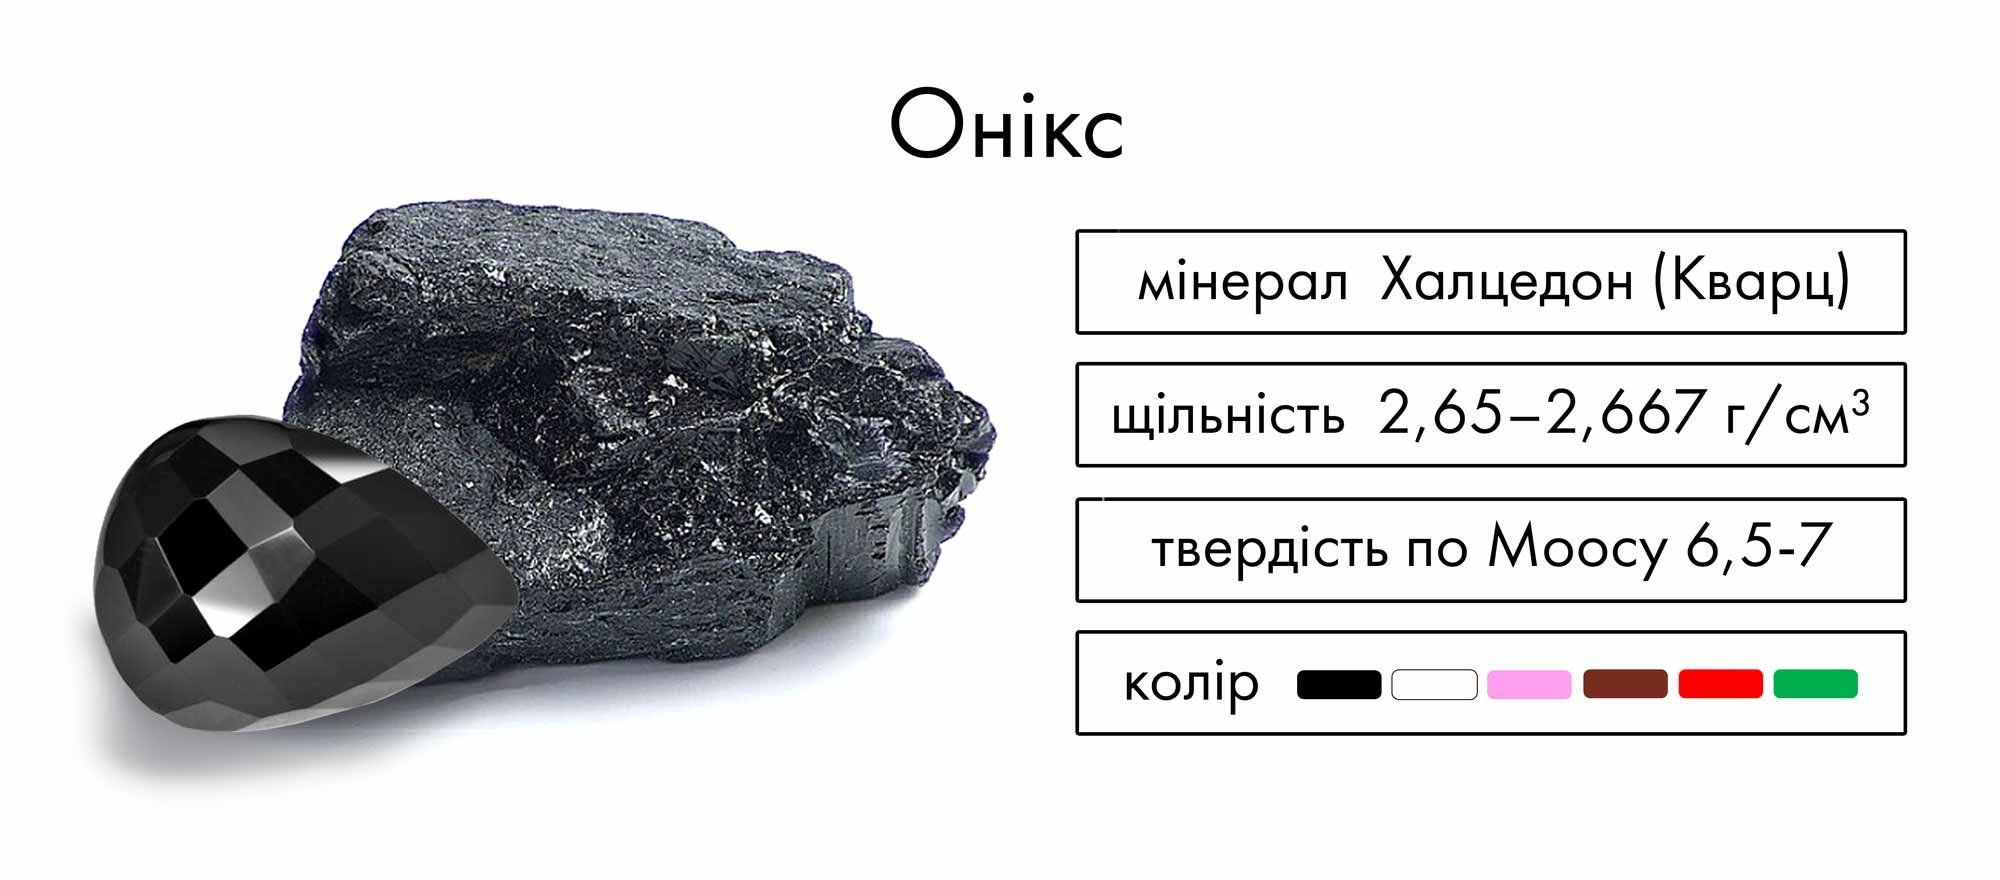 Онікс – мінерал Халцедон (кварц) – щільність 2,65 – 2,667 г/см3, твердість за моосом 6,5 - 7, колір